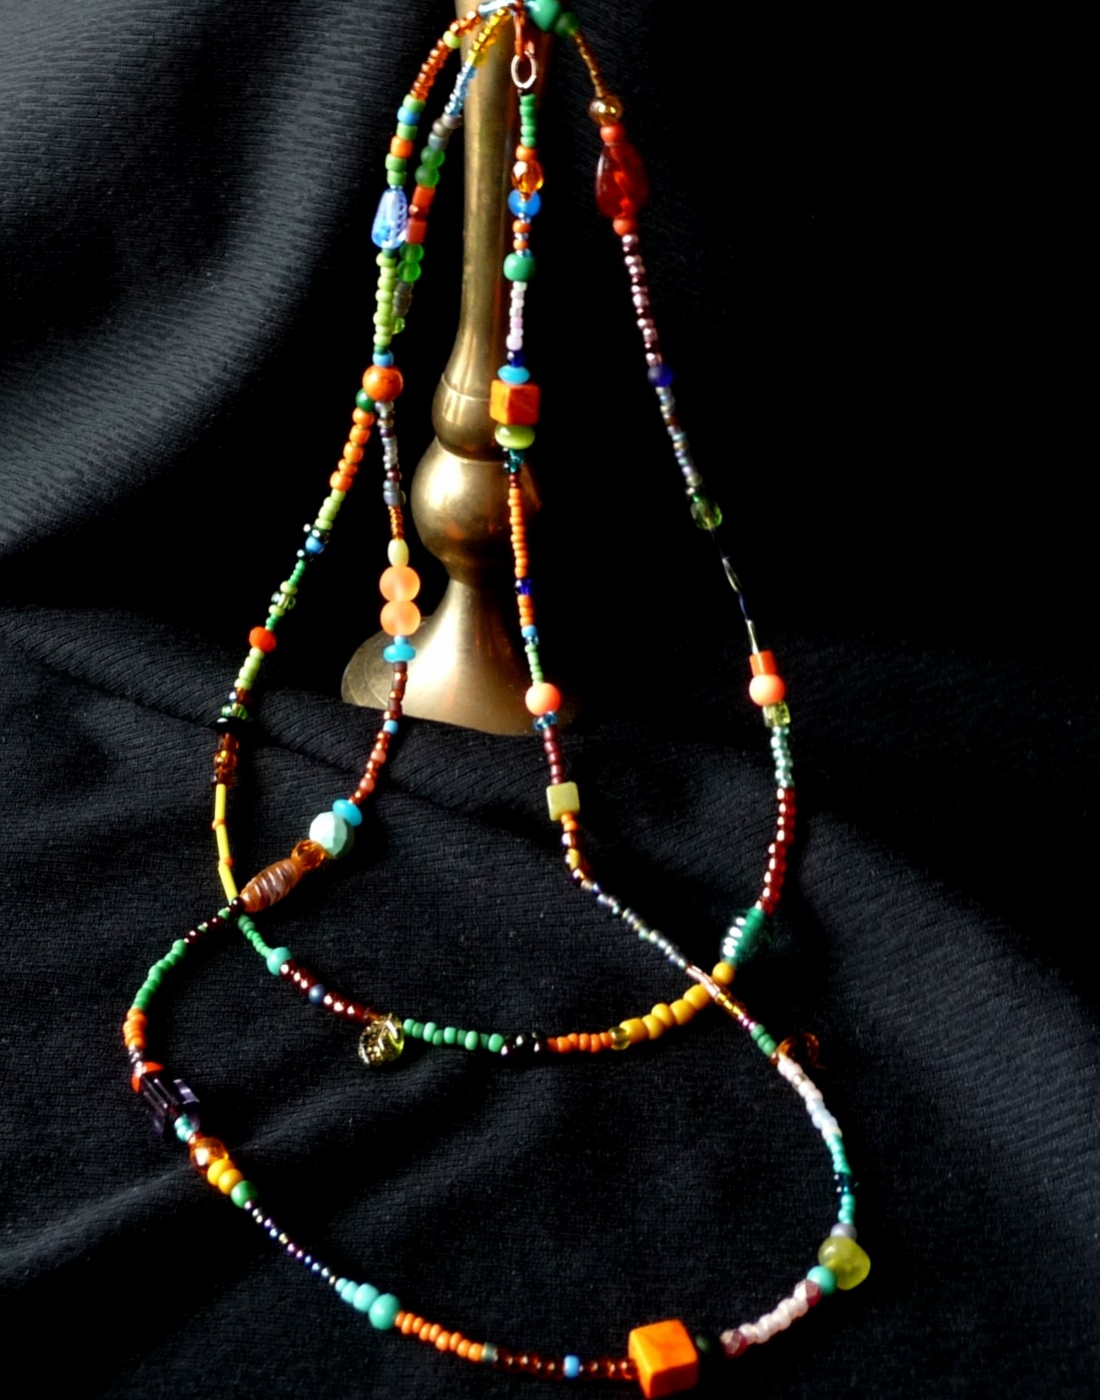 naszyjnik w modnym stylu Boho z drobnych koralików (seed beads) i dopasowanych kolorystycznie przeróżnych minerałów i szkła